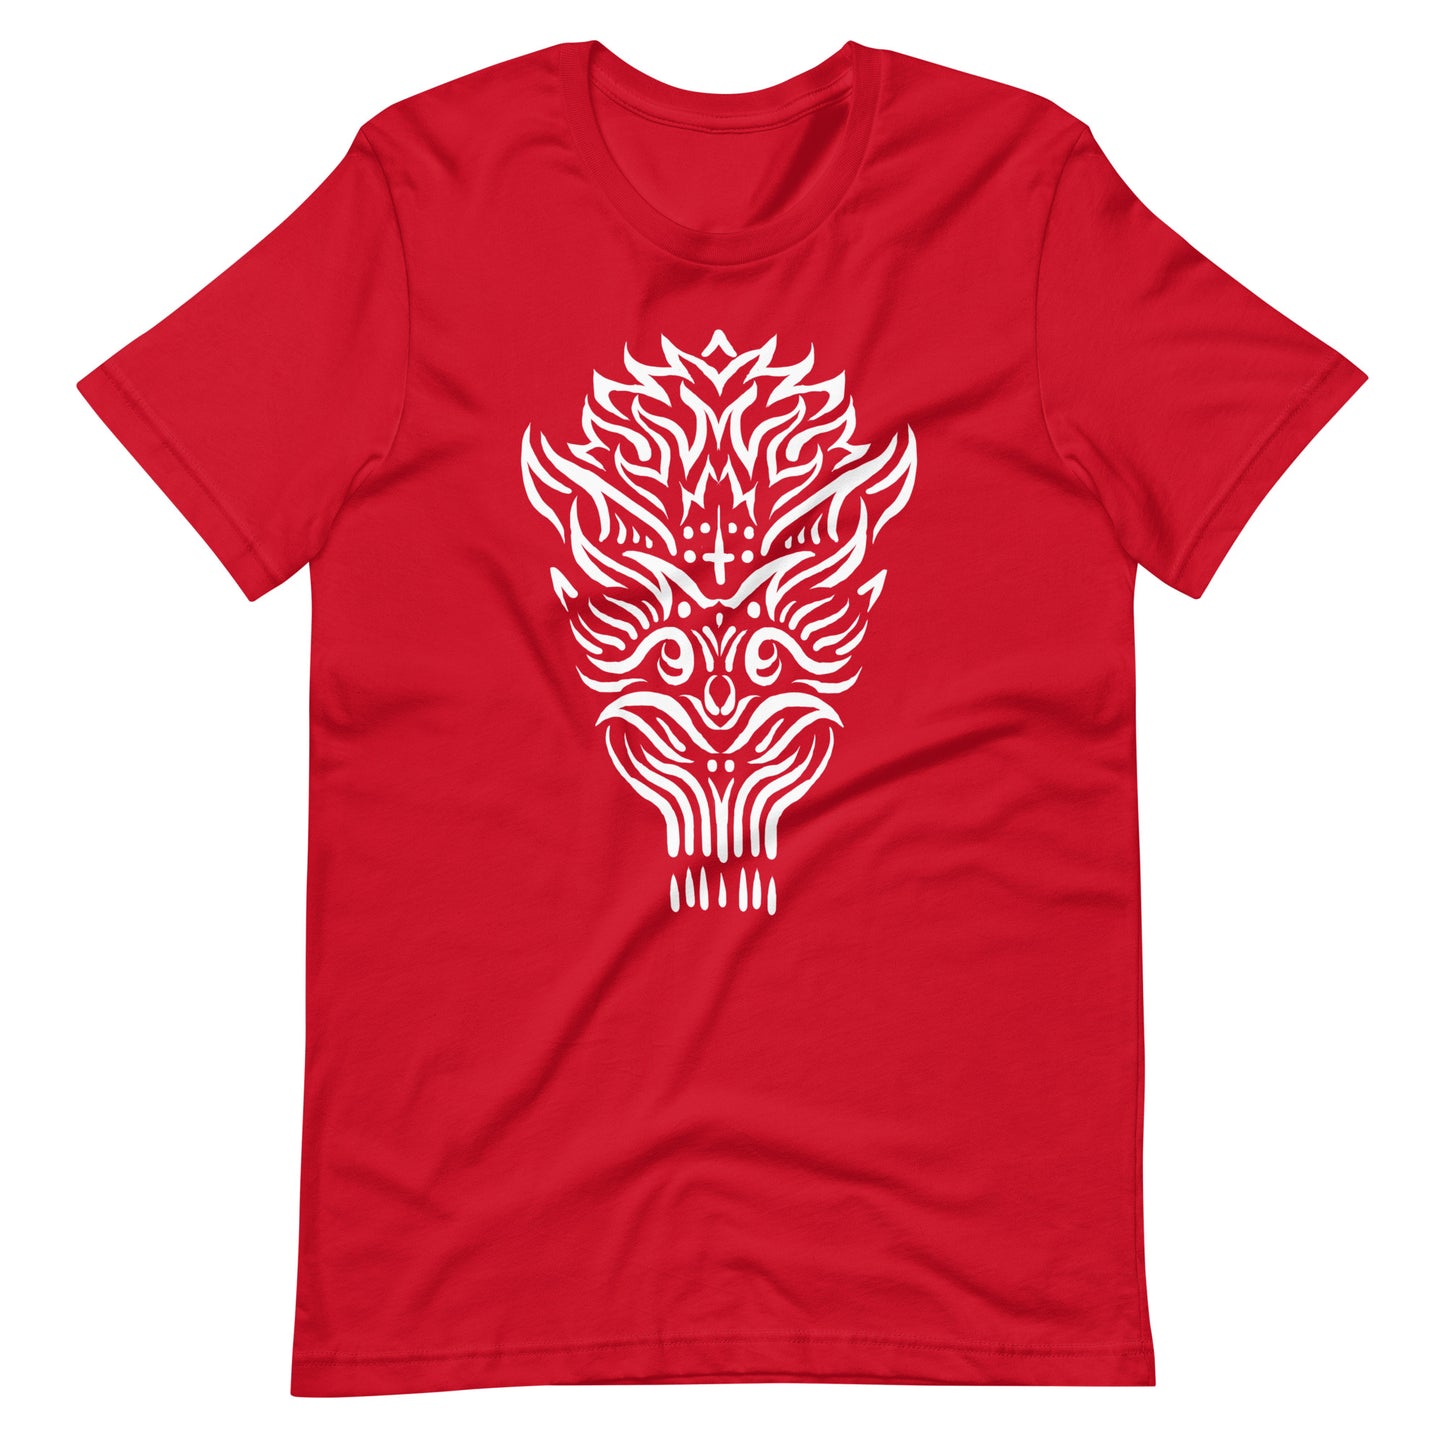 The Oldest Devil - Men's t-shirt - Red Front